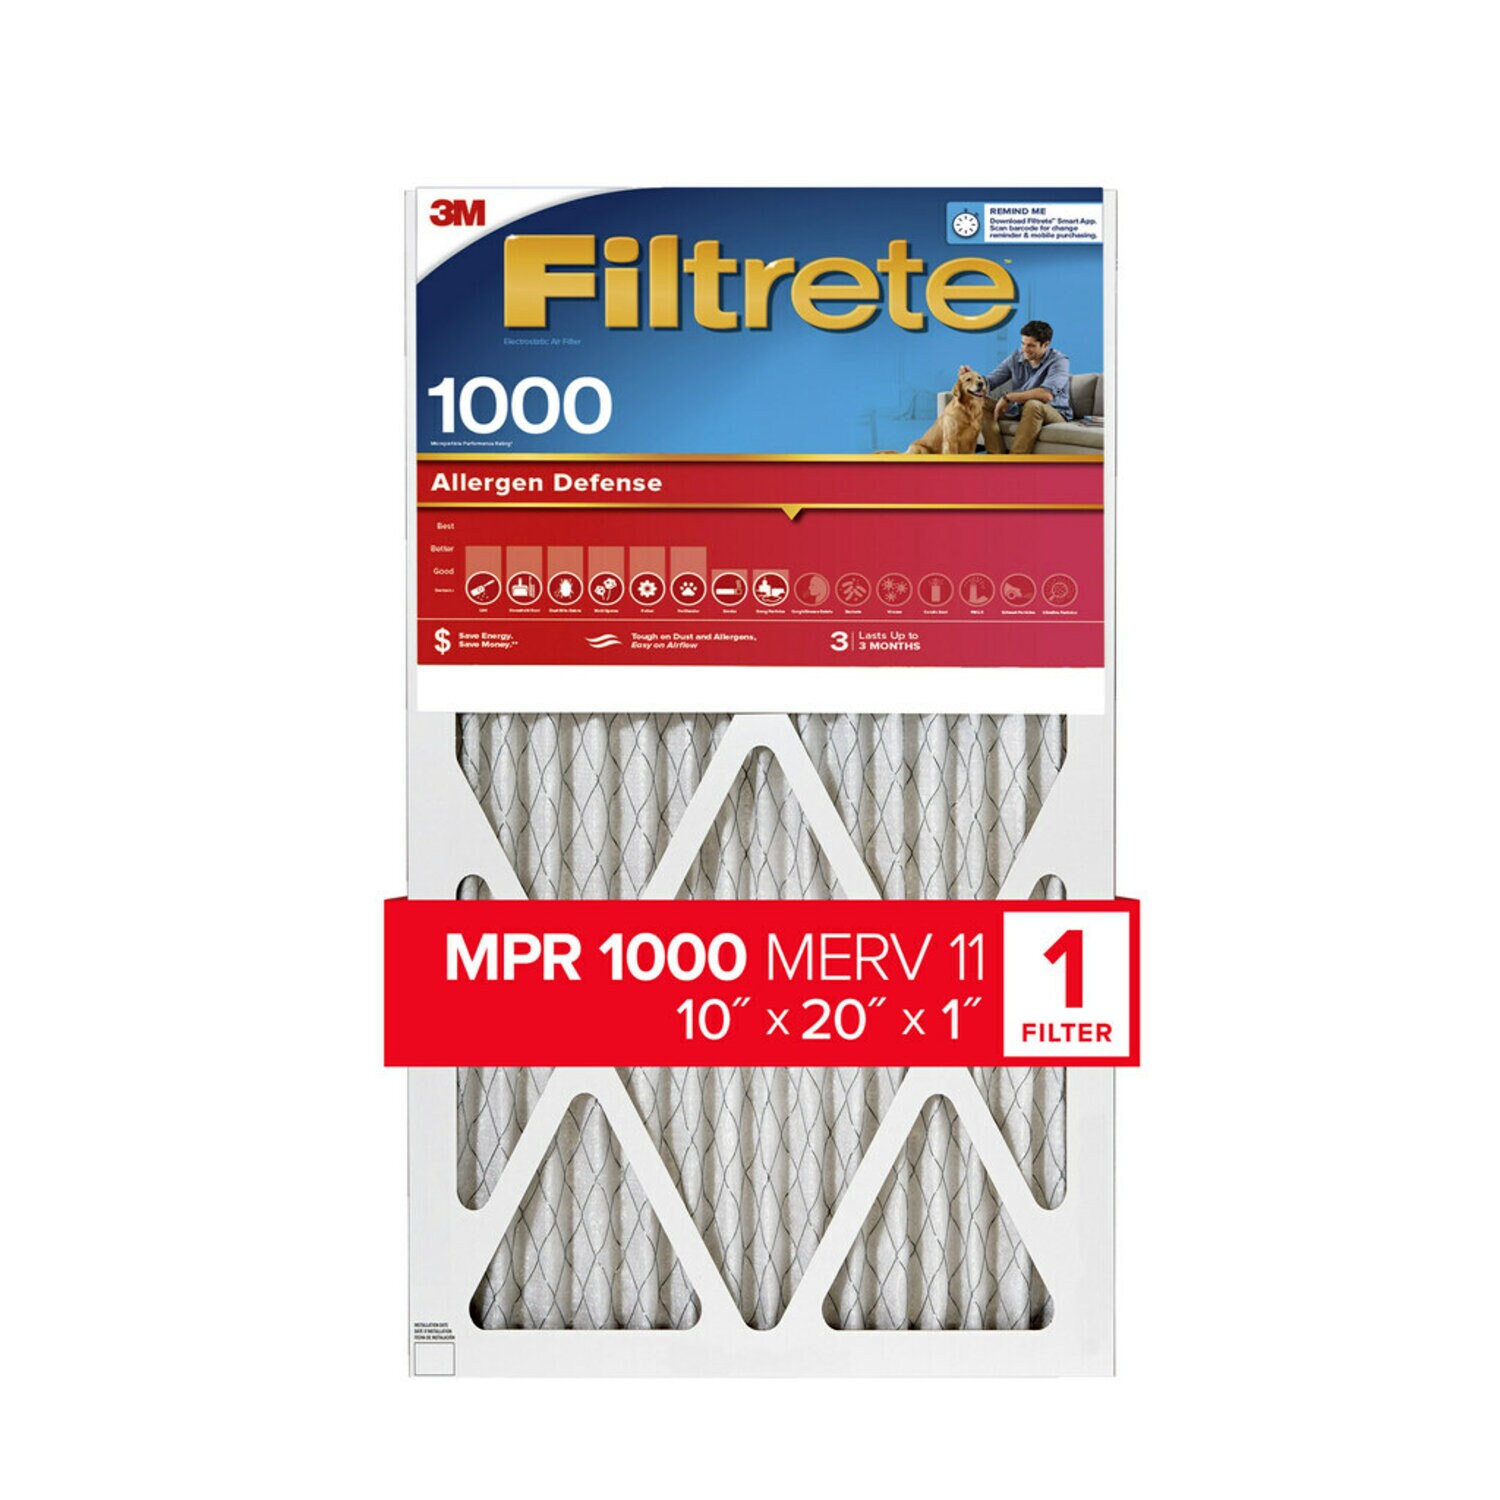 7100188271 - Filtrete Allergen Defense Air Filter, 1000 MPR, 9807-4, 10 in x 20 in x
1 in (25,4 cm x 50,8 cm x 2,5 cm)